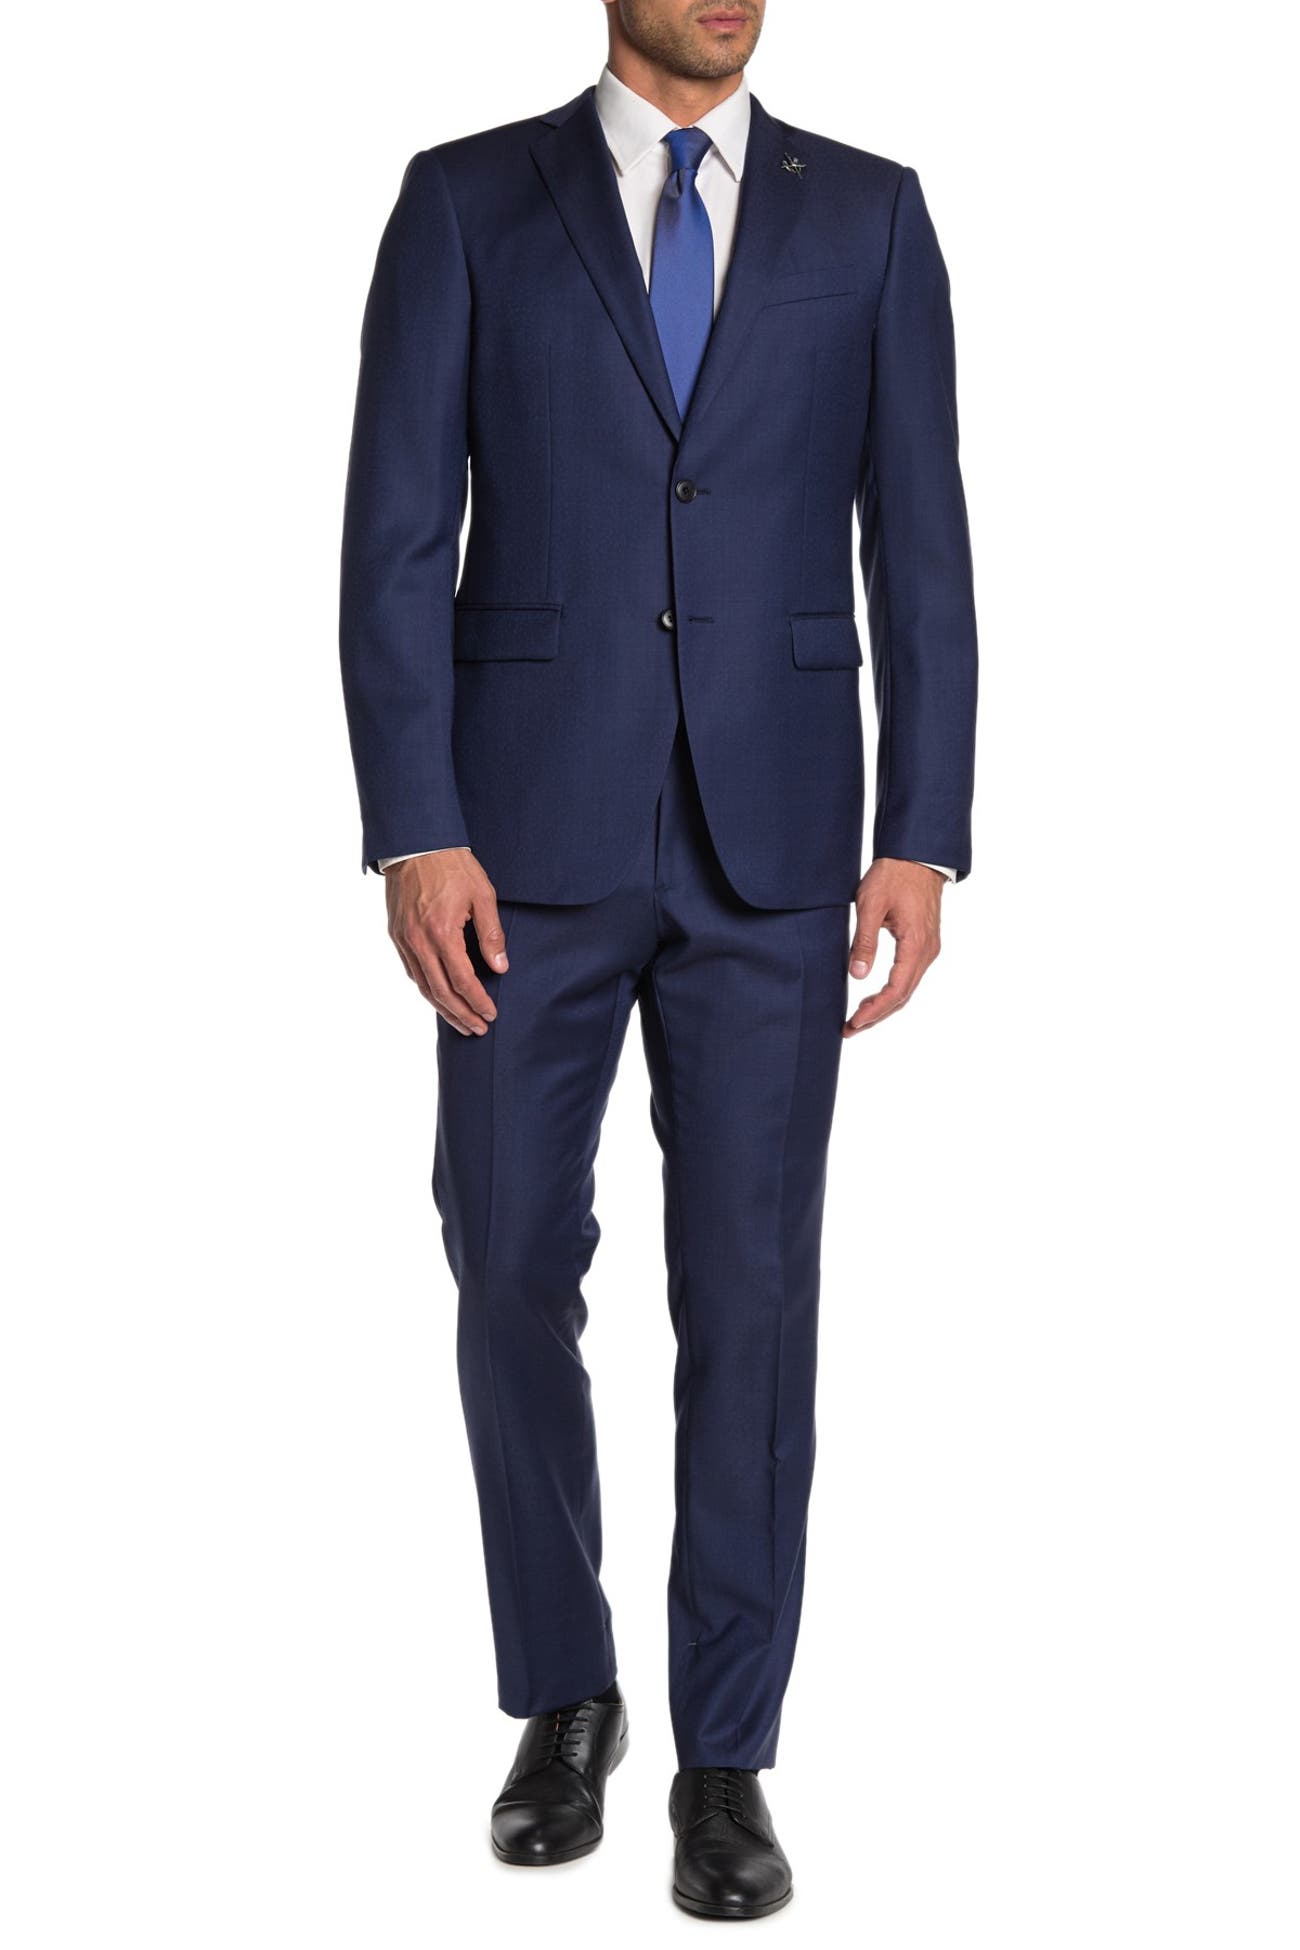 John Varvatos Star USA | Bleecker Blue Two Button Notch Lapel Wool Suit ...